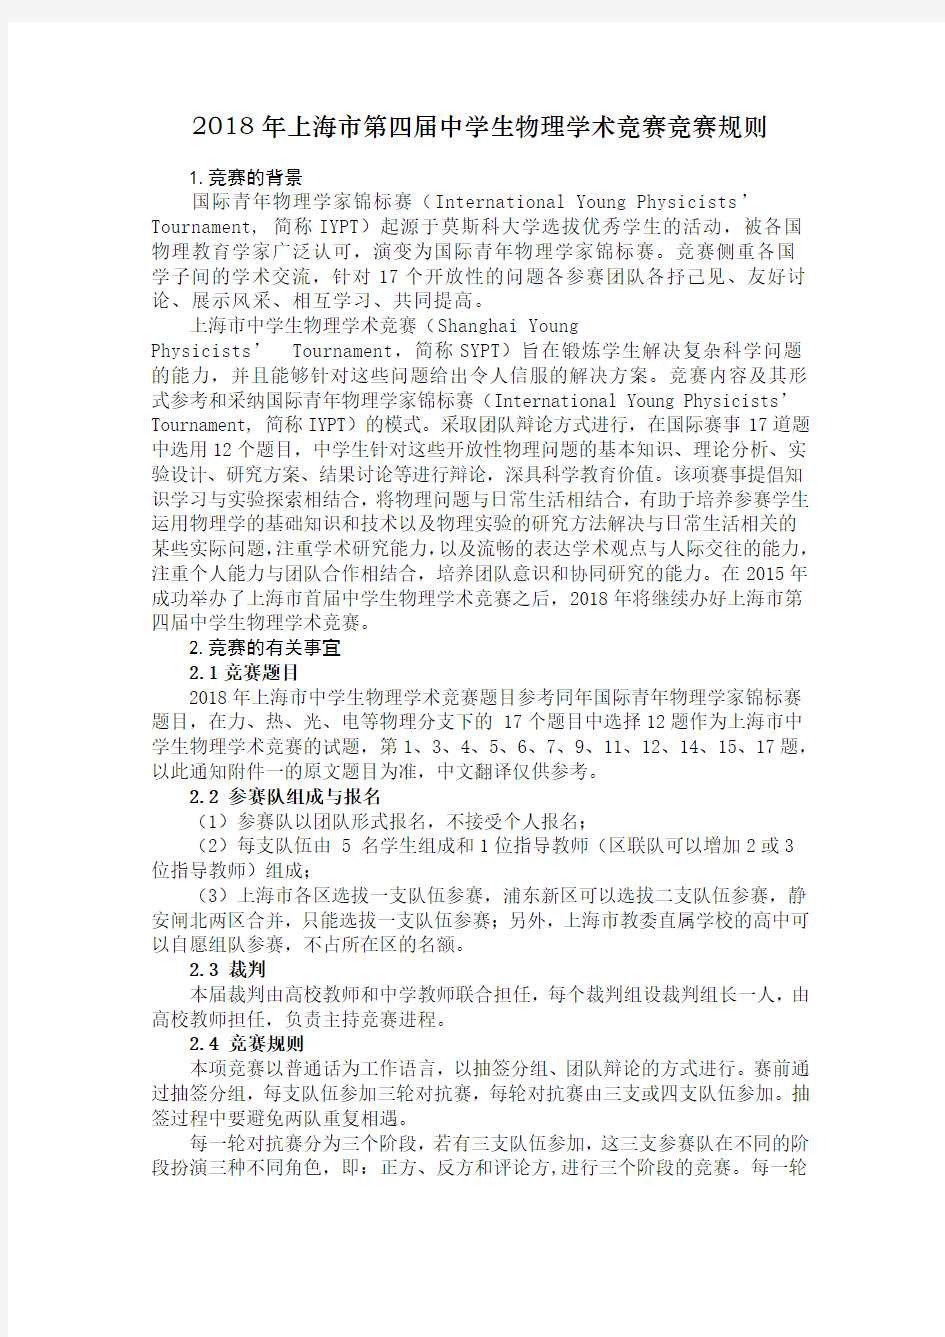 (完整版)2018年上海中学生物理学术竞赛竞赛规则-上海教委